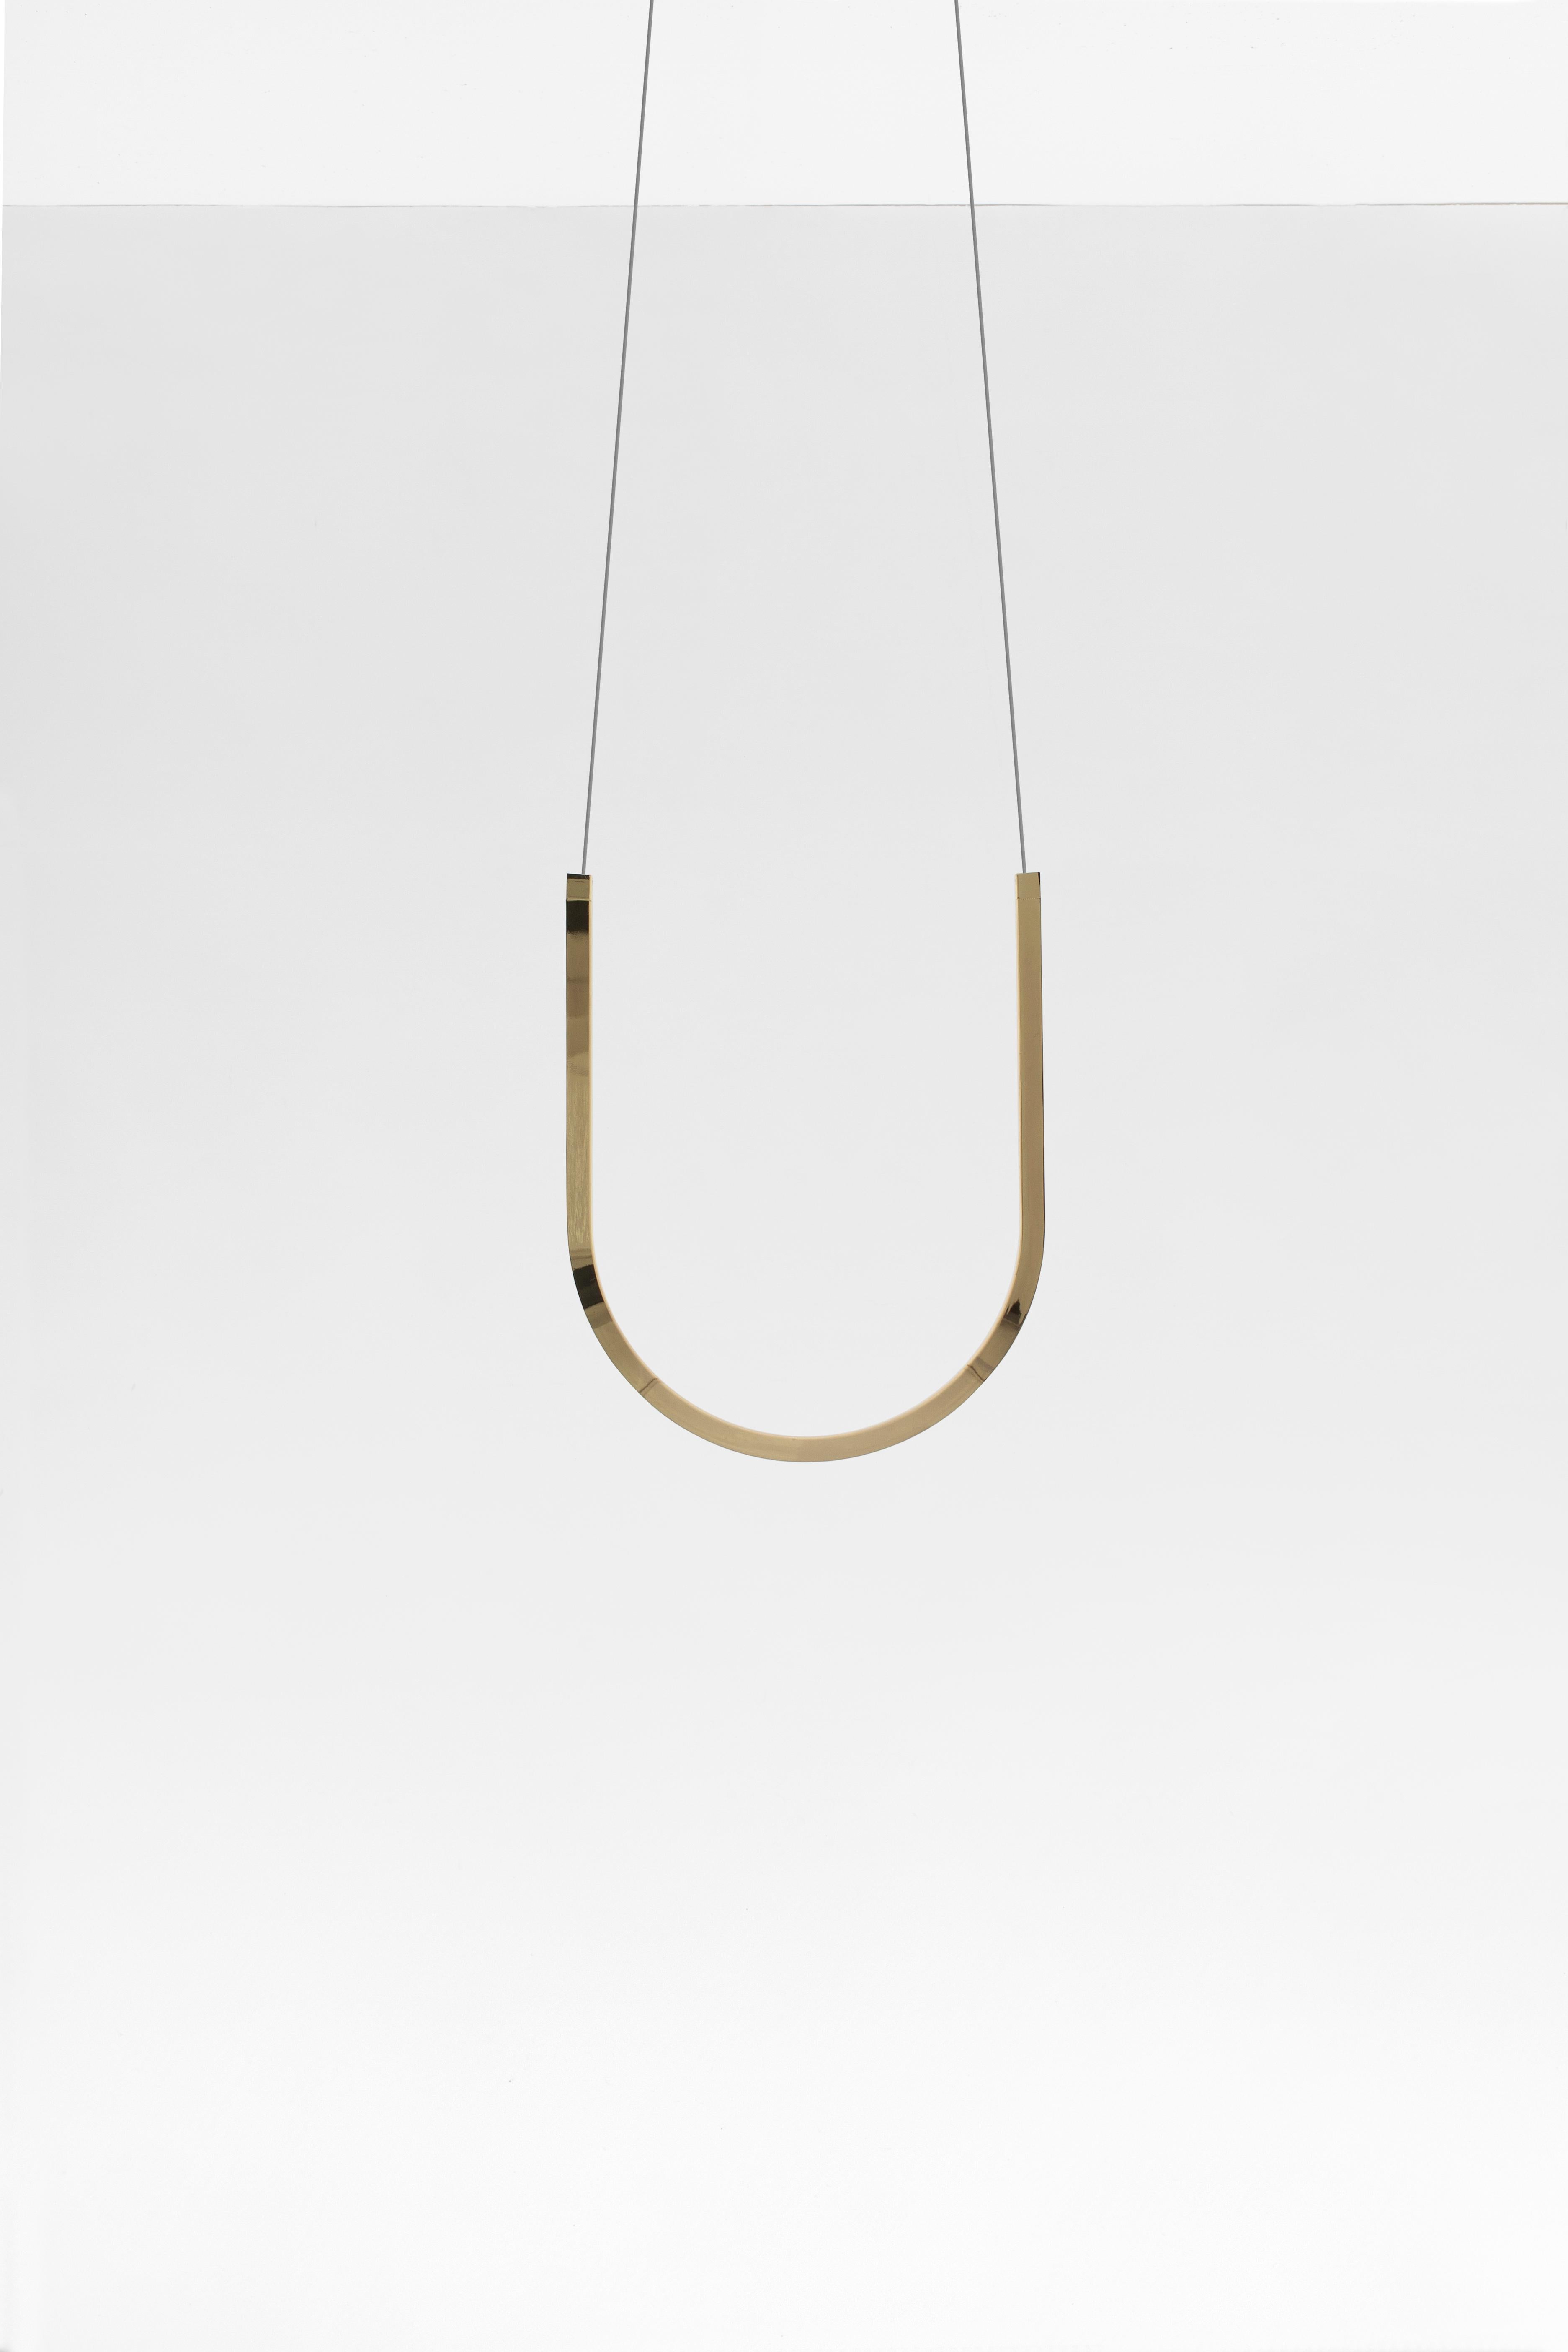 Lampe pendante U1 - Laiton

Longueur maximale du fil : 250 cm
Canopée : 20 cm de diamètre
structure en 